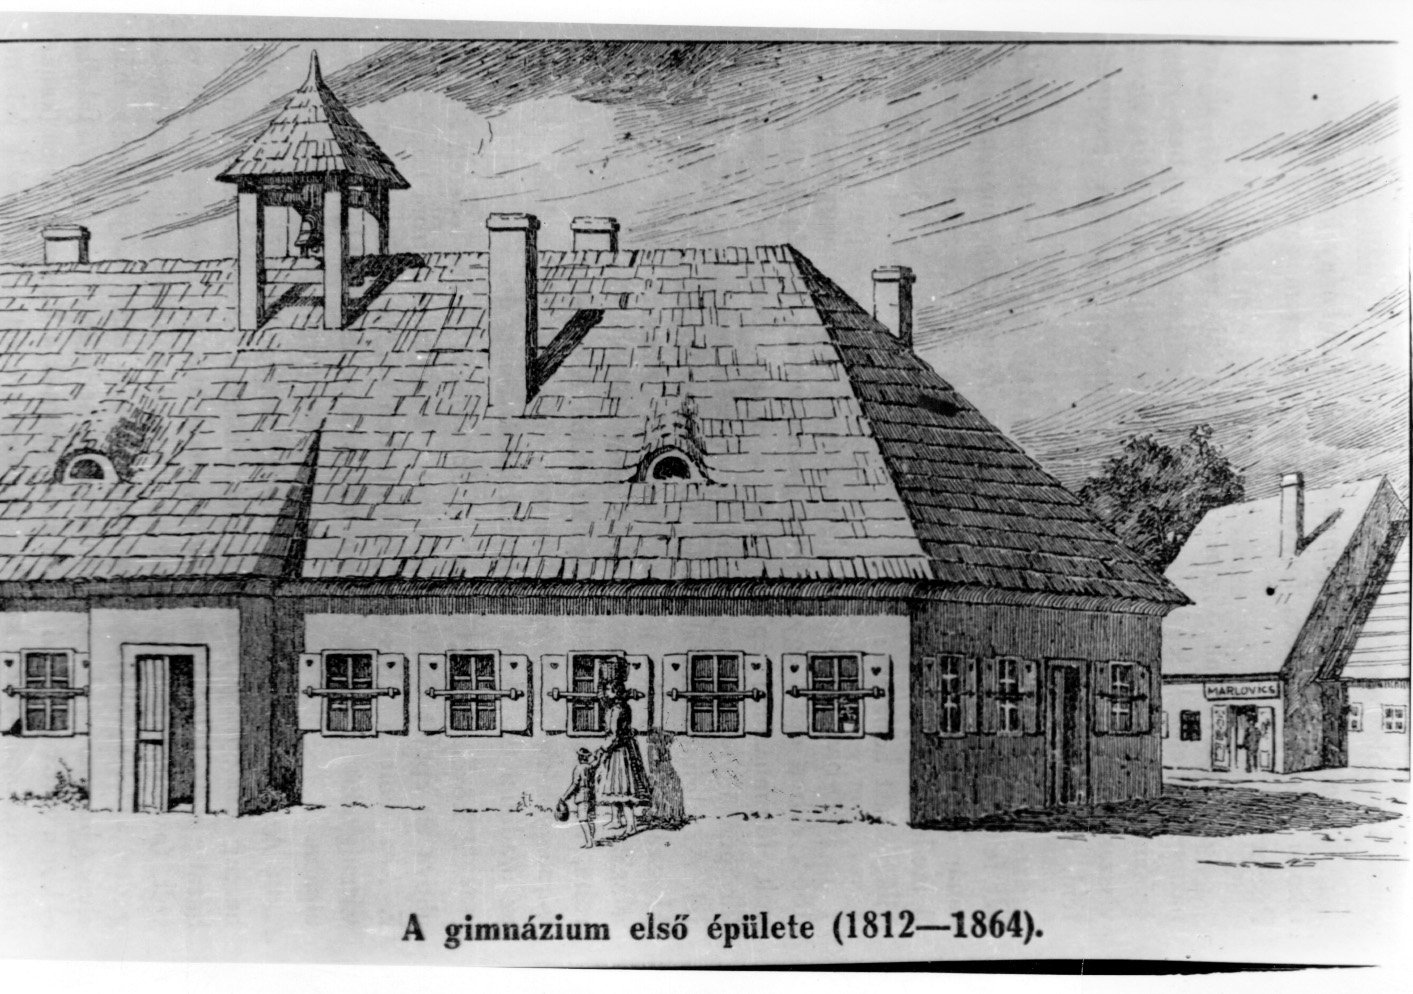 A kaposvári Táncsics gimnázium 50. évfordulója alkalmából készült felvétel a gimnázium első épületéről (1812-1864), amelyet egy vendéglőb (Rippl-Rónai Múzeum CC BY-NC-SA)